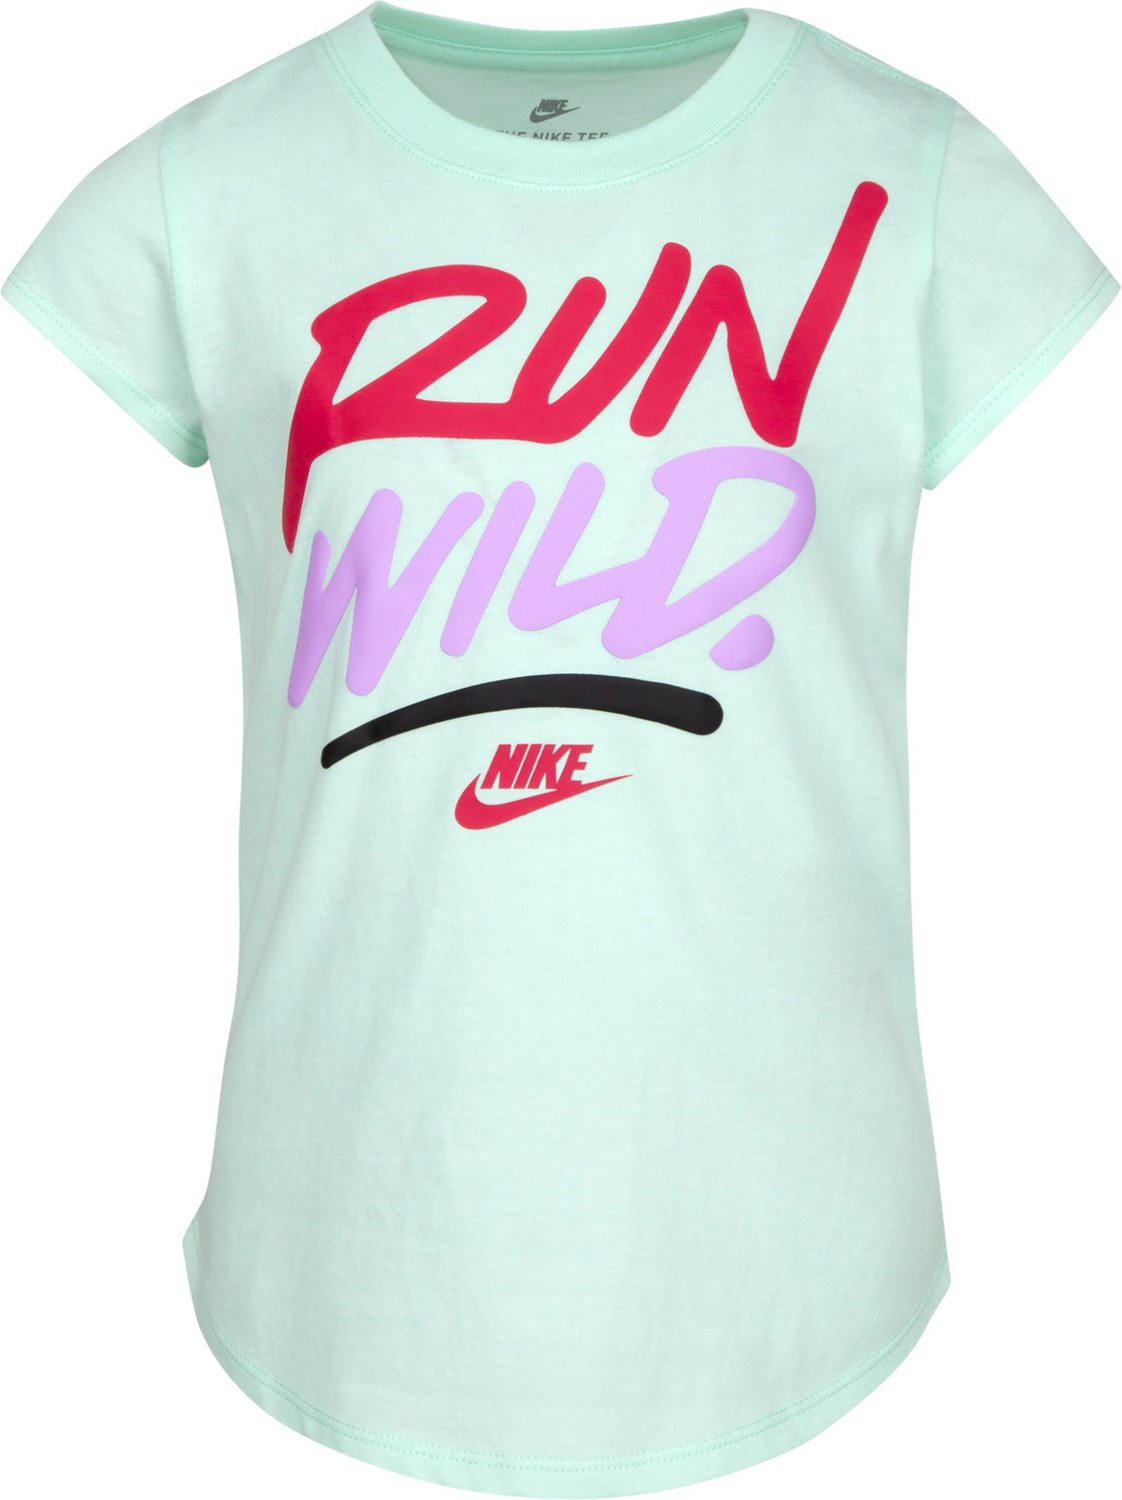 Nike Girls' Run Wild Graphic T-shirt | Academy